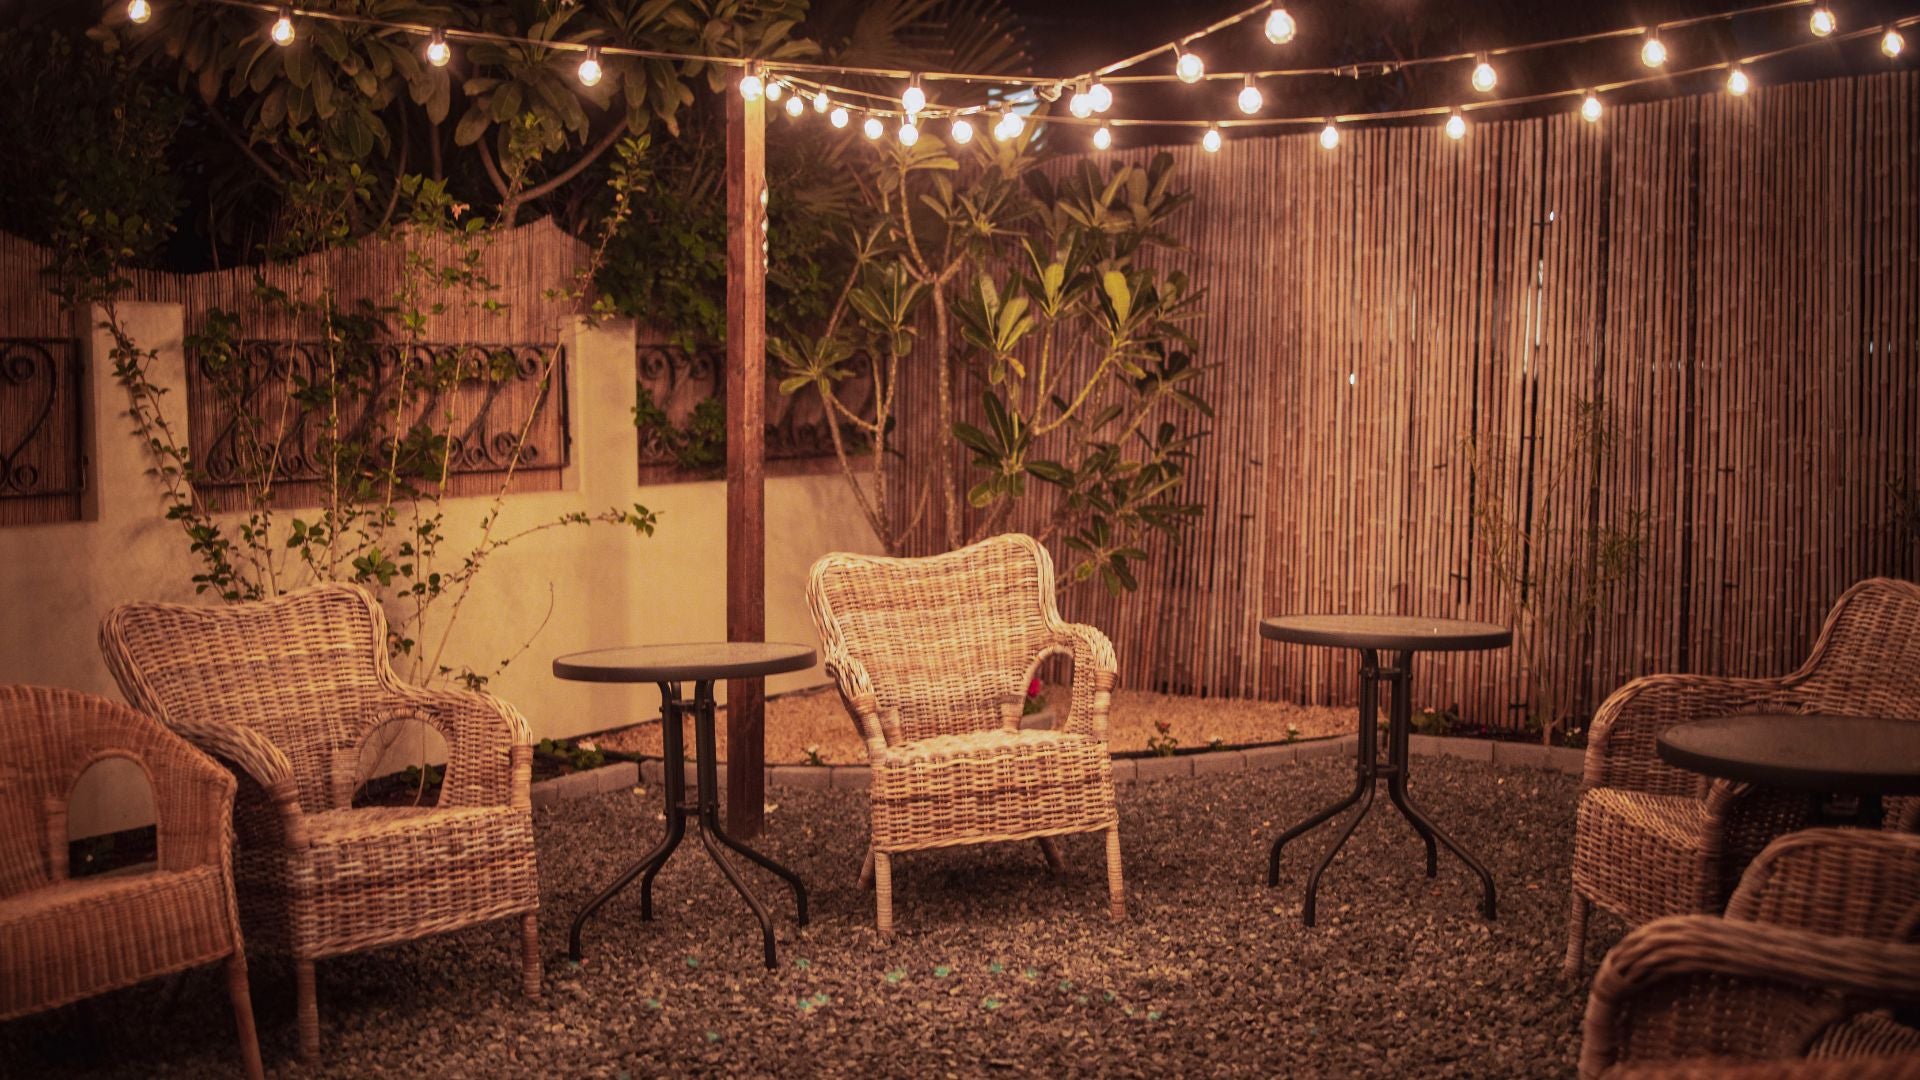 backyard movie night seating ideas